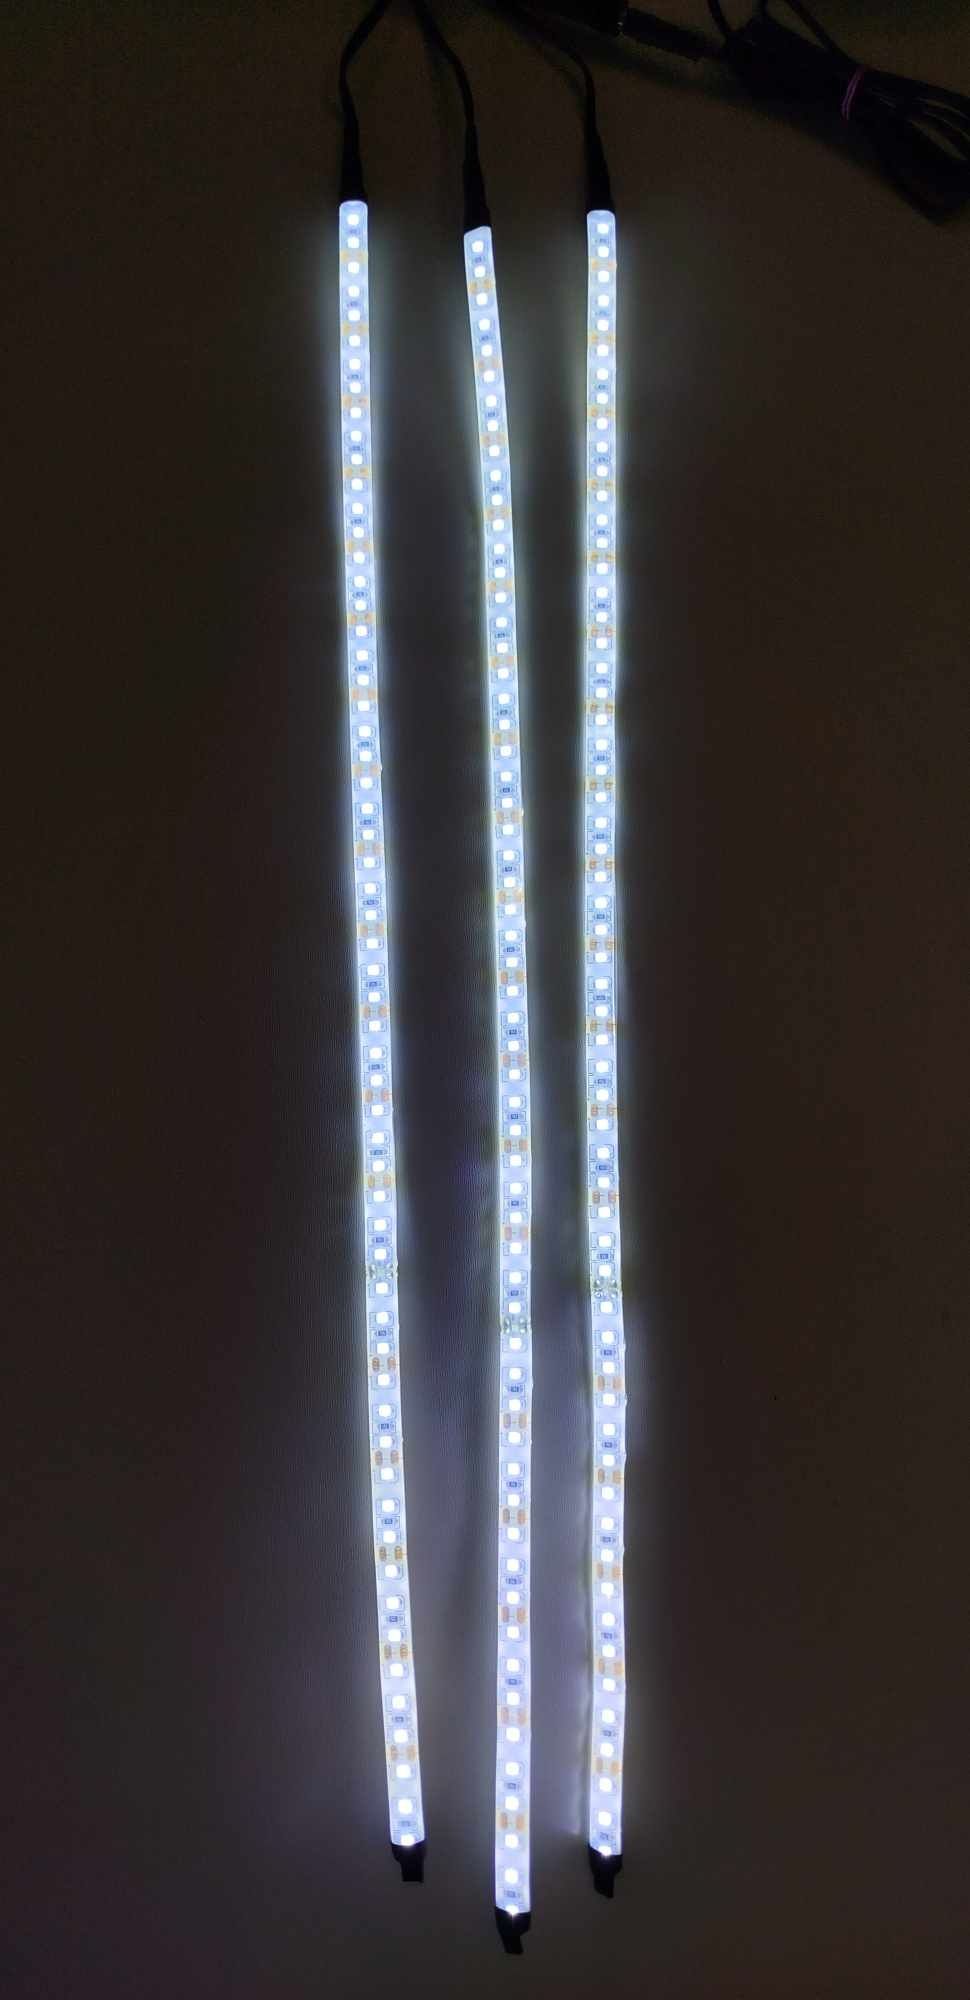 Lampa LED / ledy / paski do akwarium AQUALED 14W 3x50cm